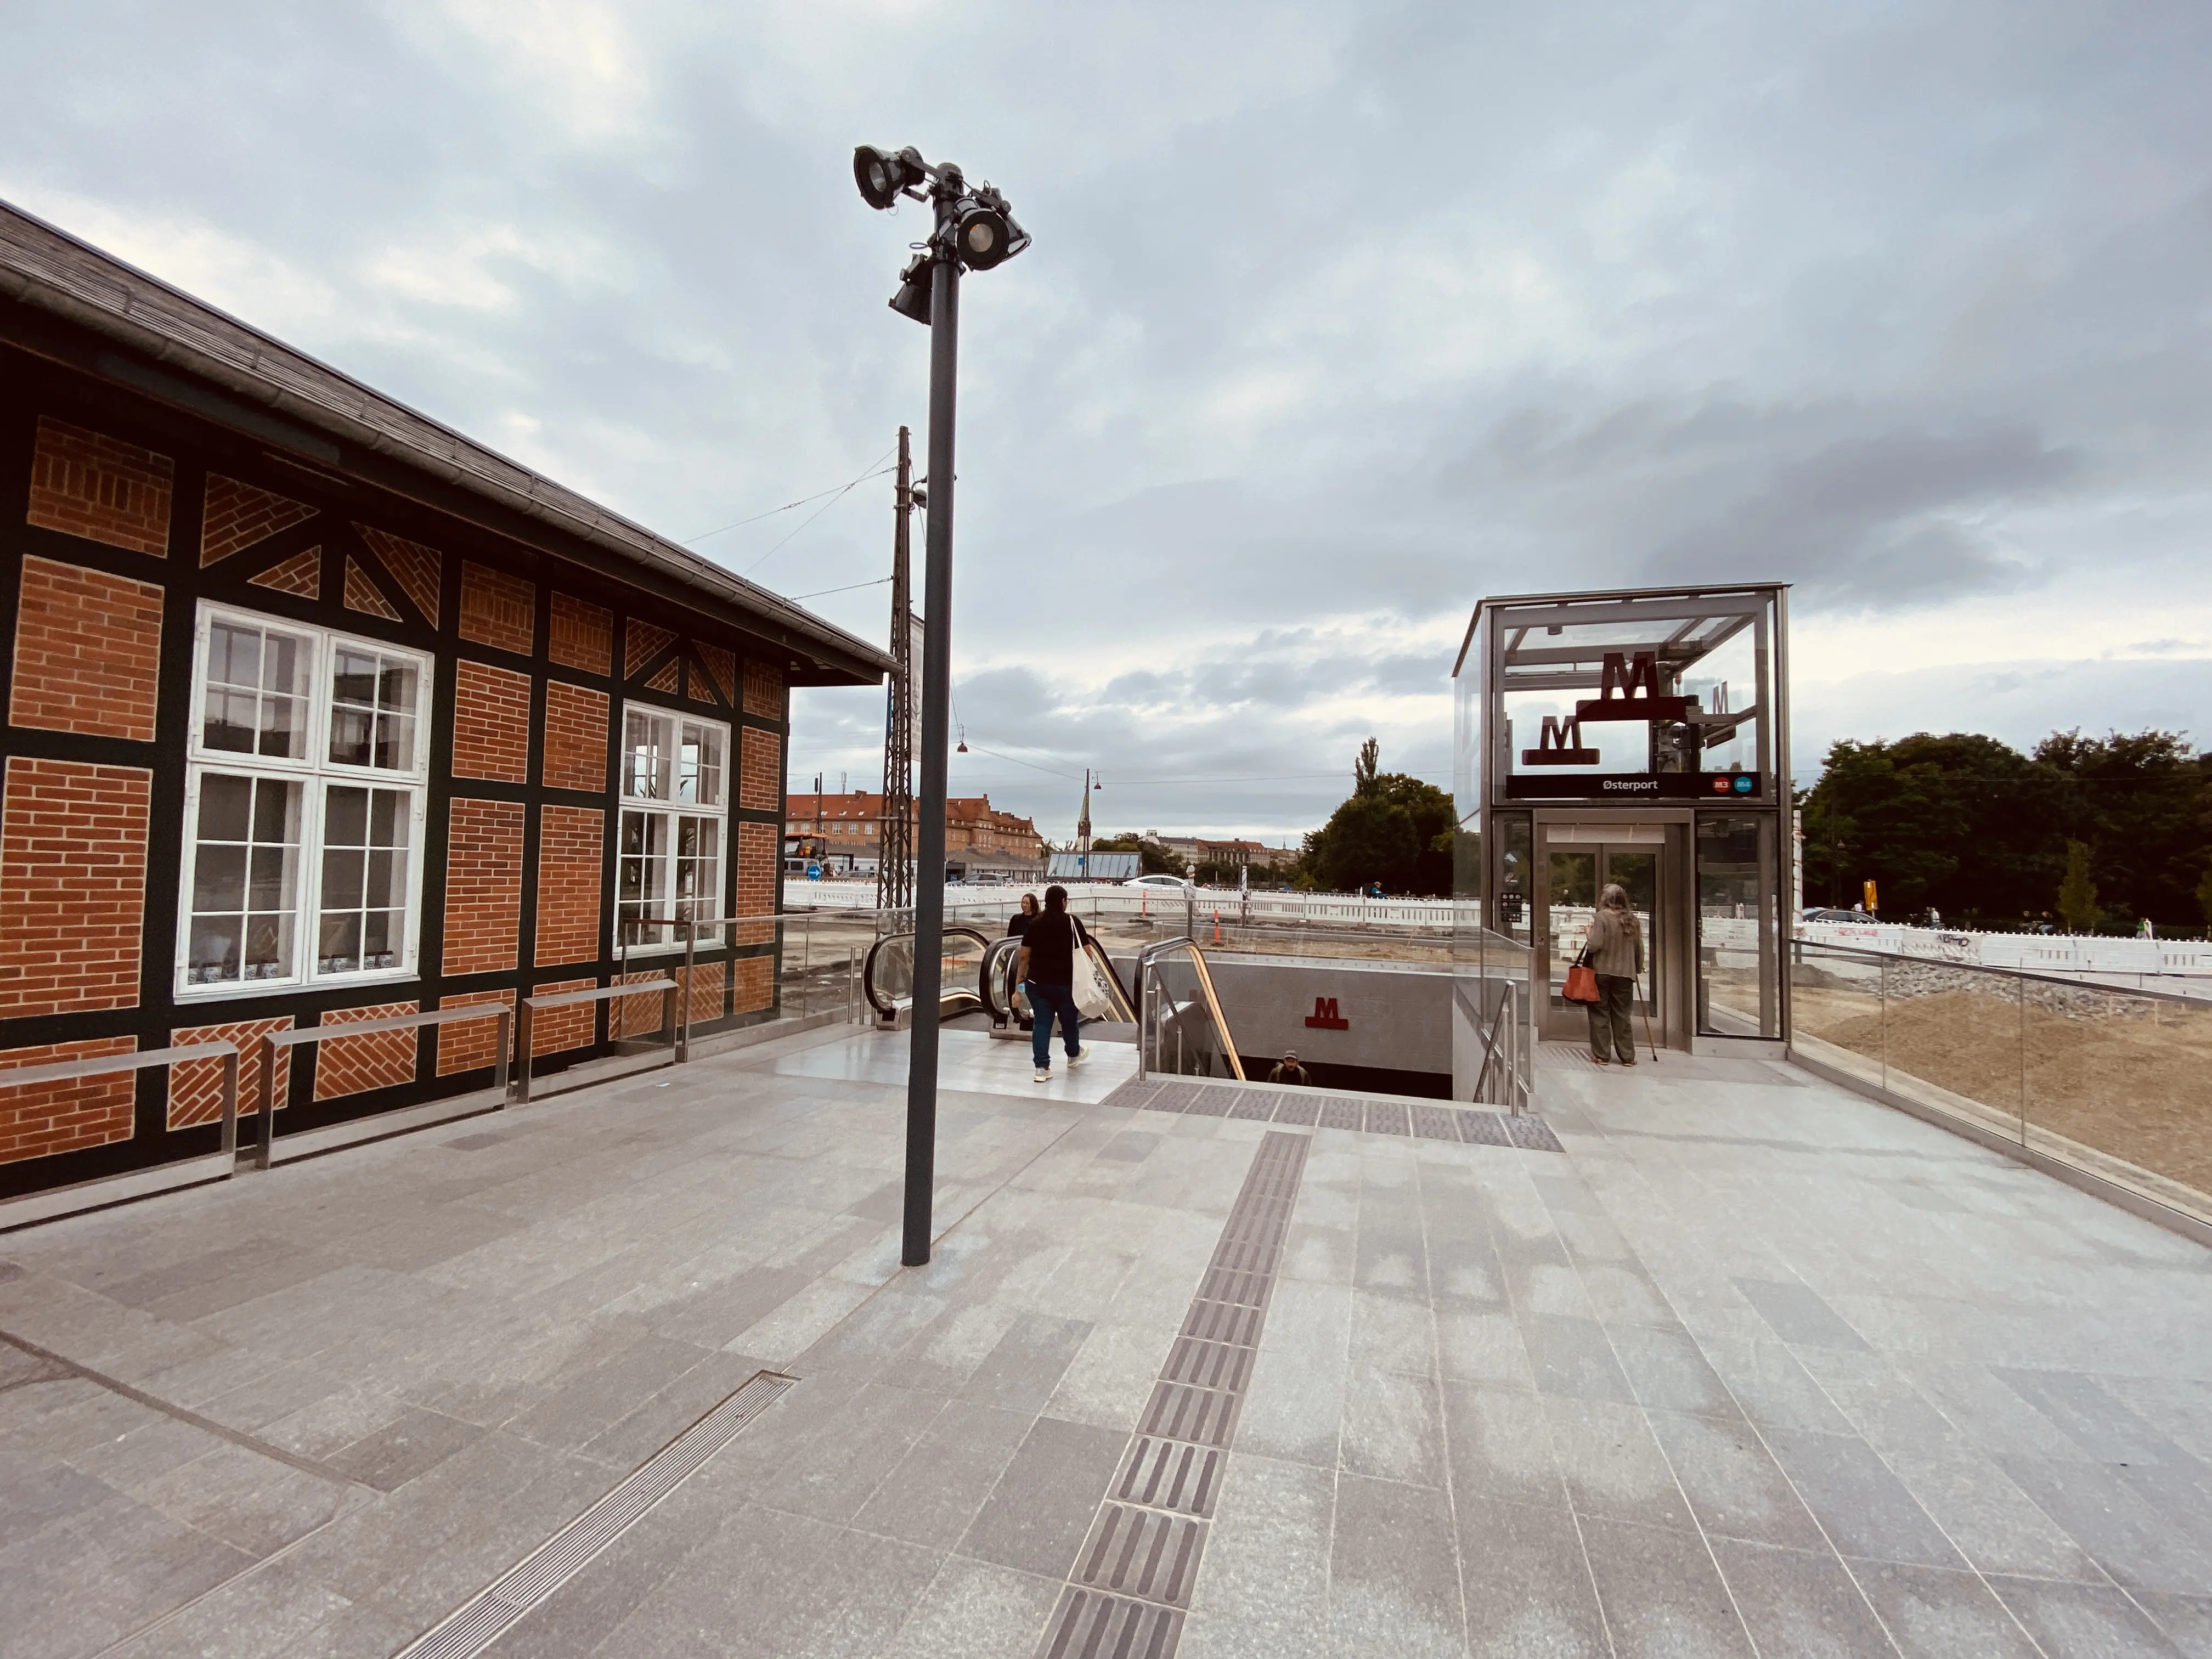 Billede af Østerport Metrostation.